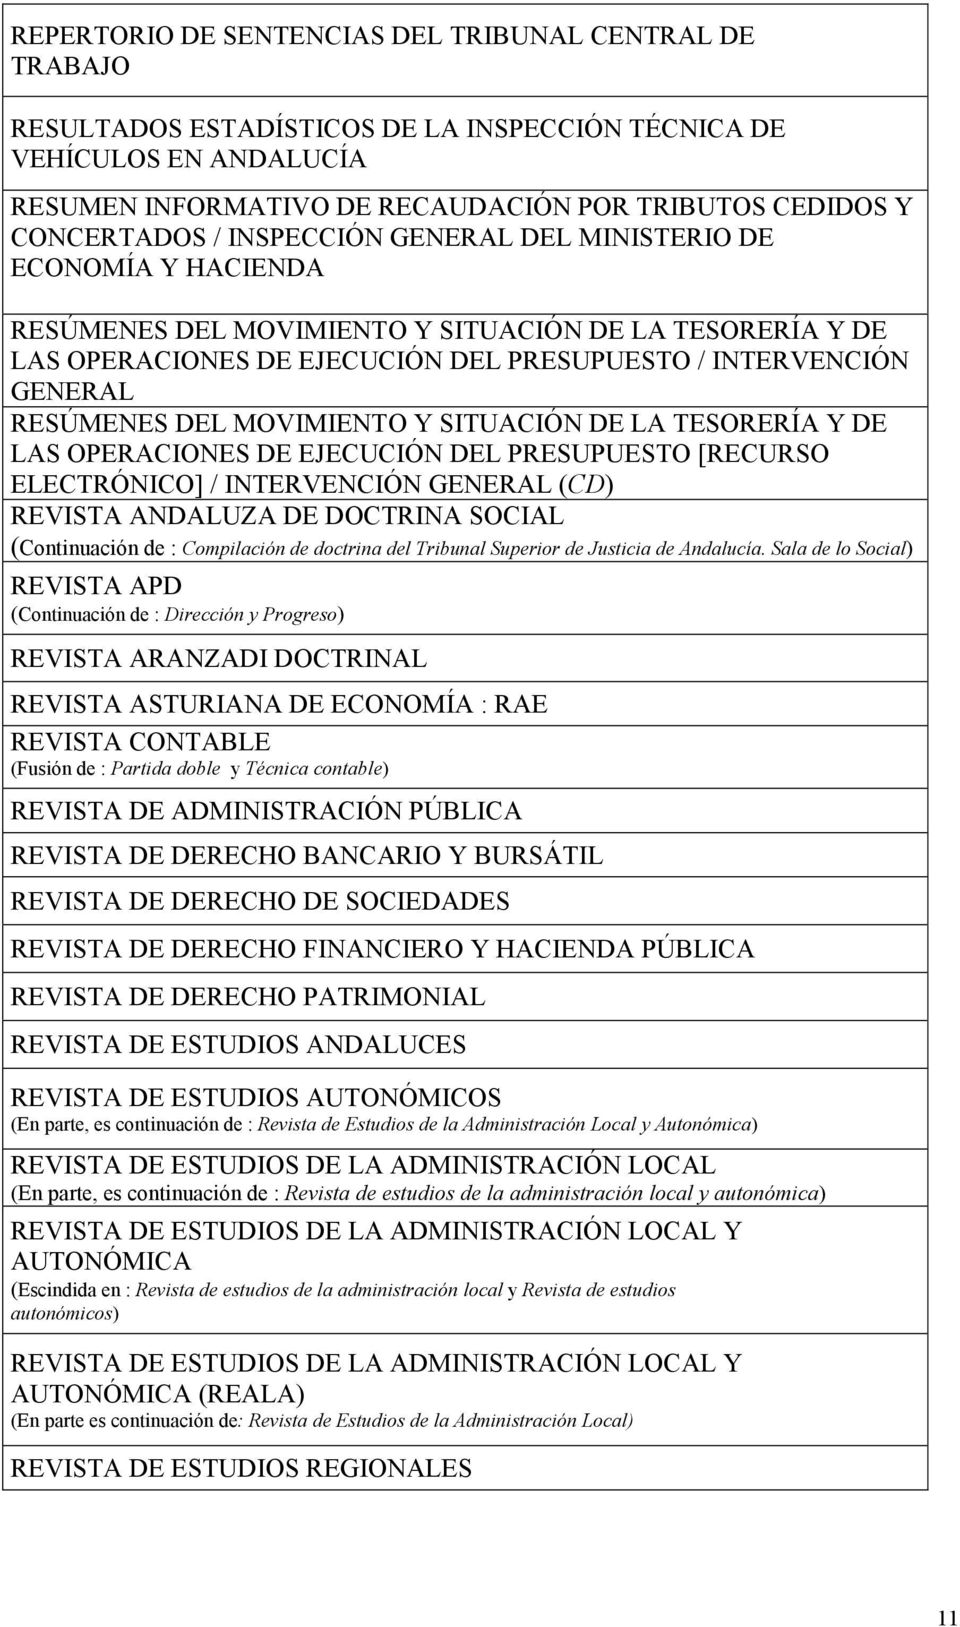 RESÚMENES DEL MOVIMIENTO Y SITUACIÓN DE LA TESORERÍA Y DE LAS OPERACIONES DE EJECUCIÓN DEL PRESUPUESTO [RECURSO ELECTRÓNICO] / INTERVENCIÓN GENERAL (CD) REVISTA ANDALUZA DE DOCTRINA SOCIAL